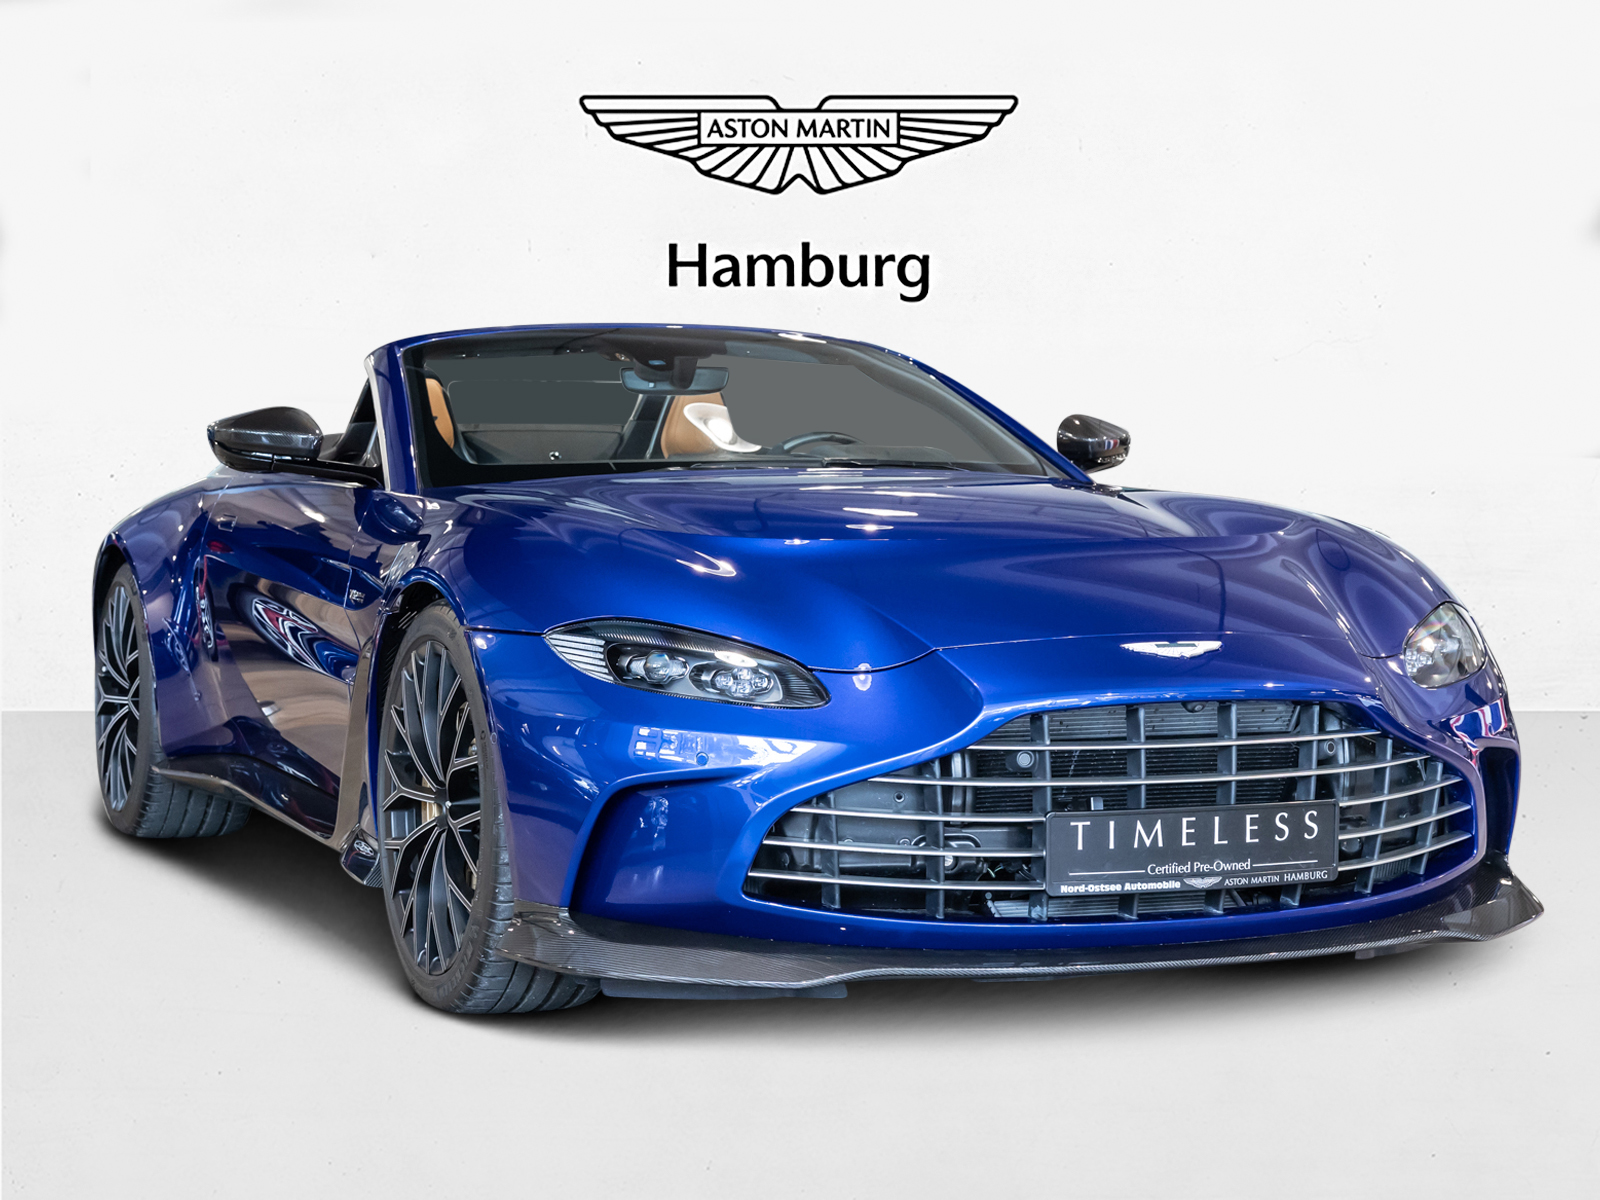 Aston Martin V12 Vantage Roadster - Aston Martin Hamburg